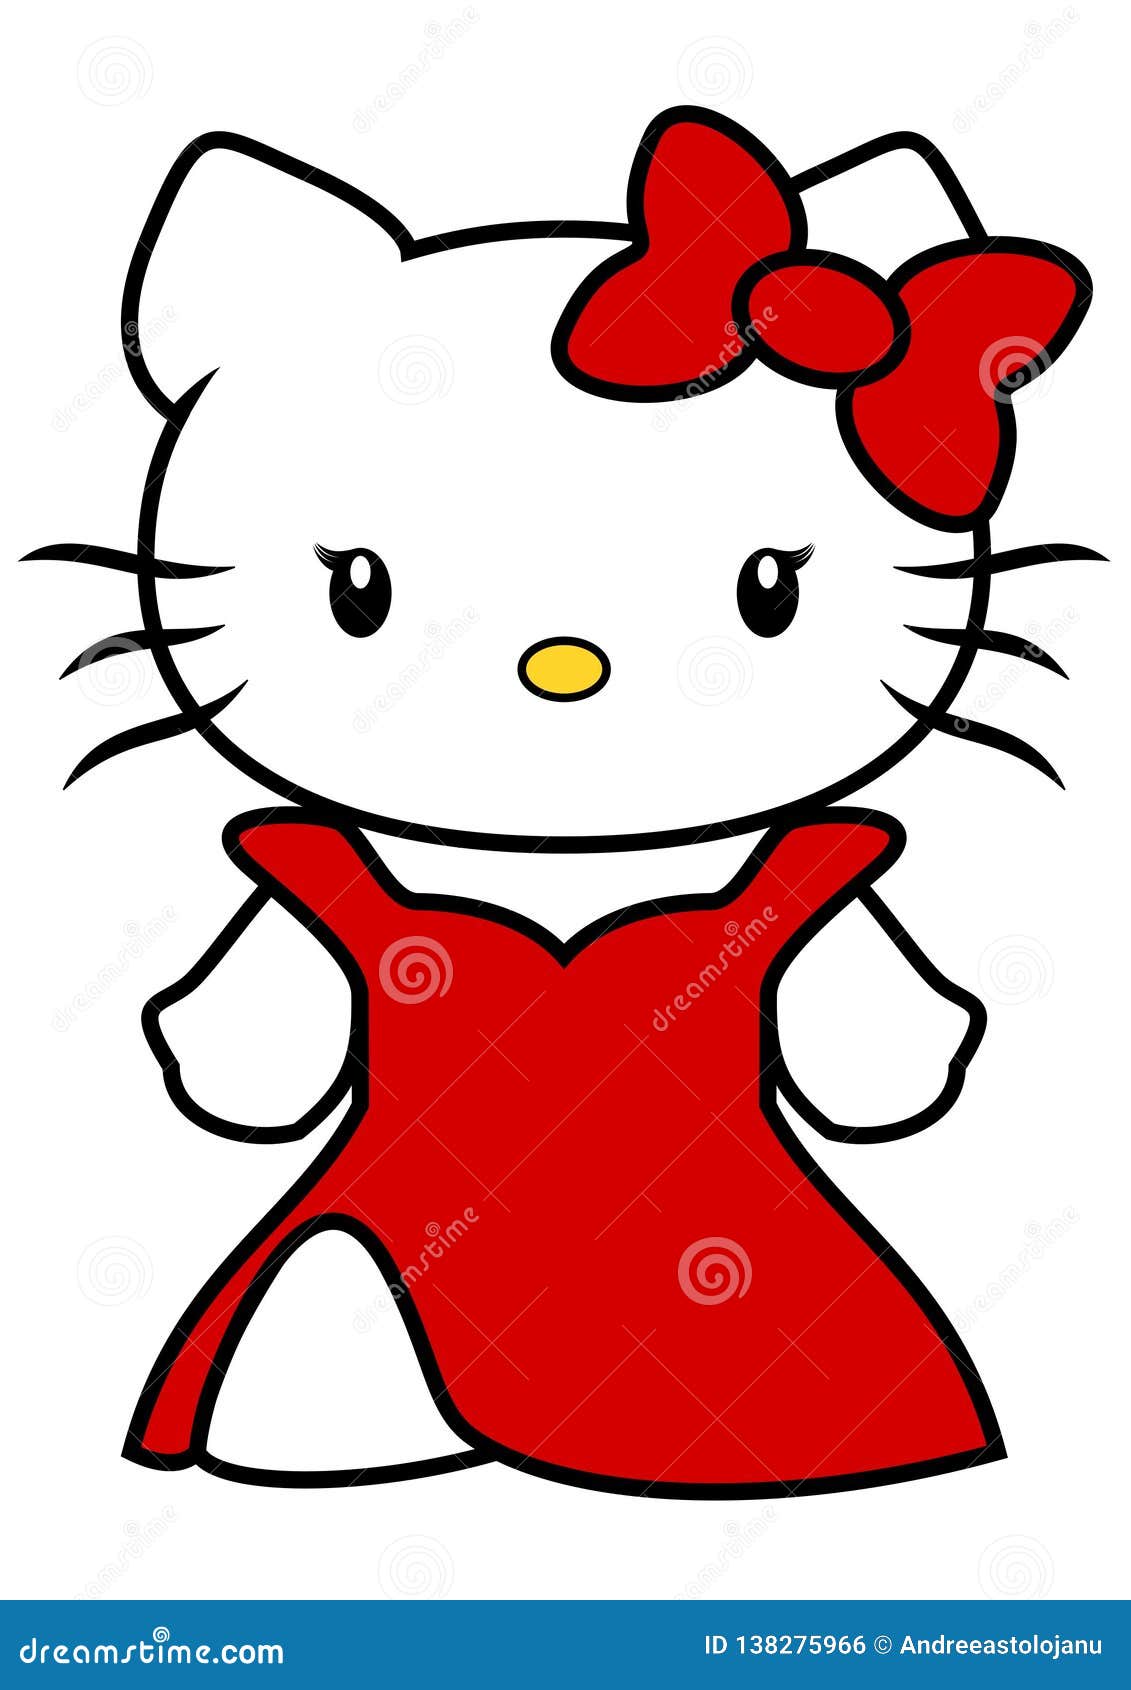 Voorverkoop Scheiden geestelijke gezondheid Hello Kitty Stock Illustrations – 850 Hello Kitty Stock Illustrations,  Vectors & Clipart - Dreamstime